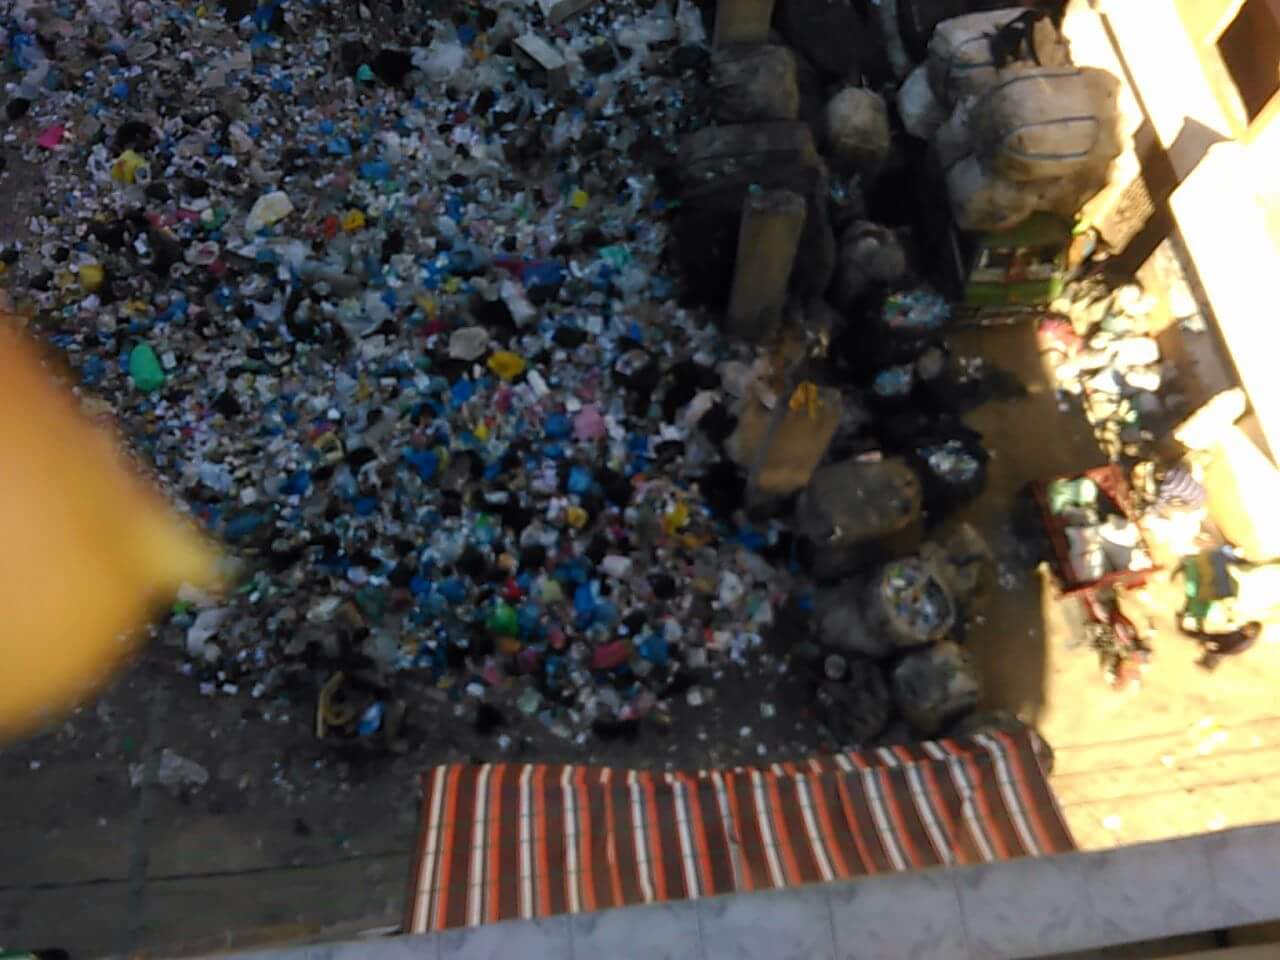 صورة أخرى توضح القمامة فى شارع النصر